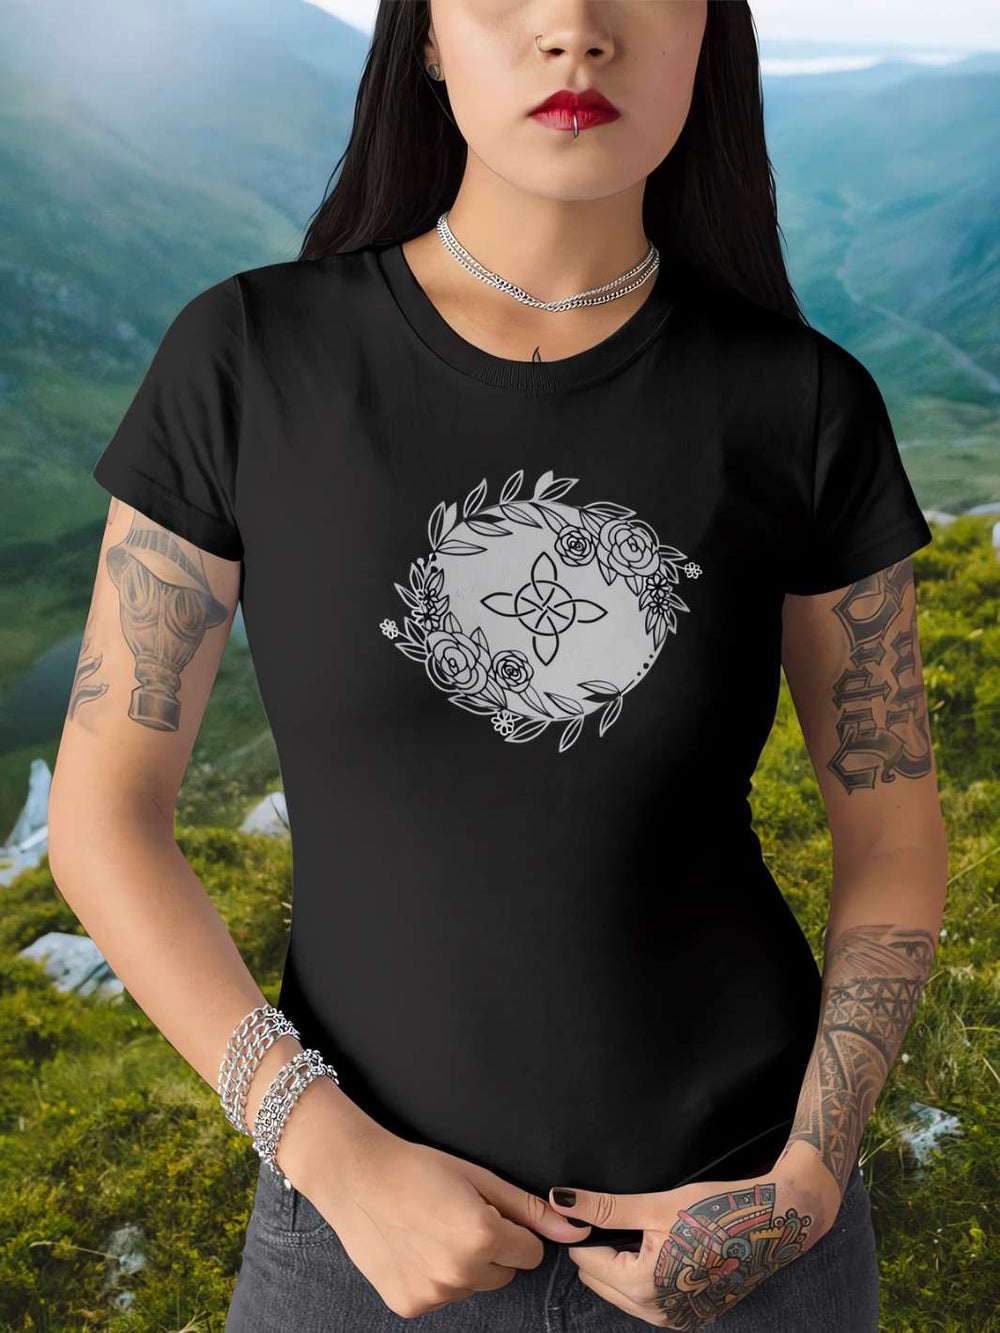 unge Frau trägt ein 'Eriu Witch Knot'-T-Shirt in schwarz, posierend in einer keltischen Landschaftsumgebung, die Ruhe und Mystik ausstrahlt."